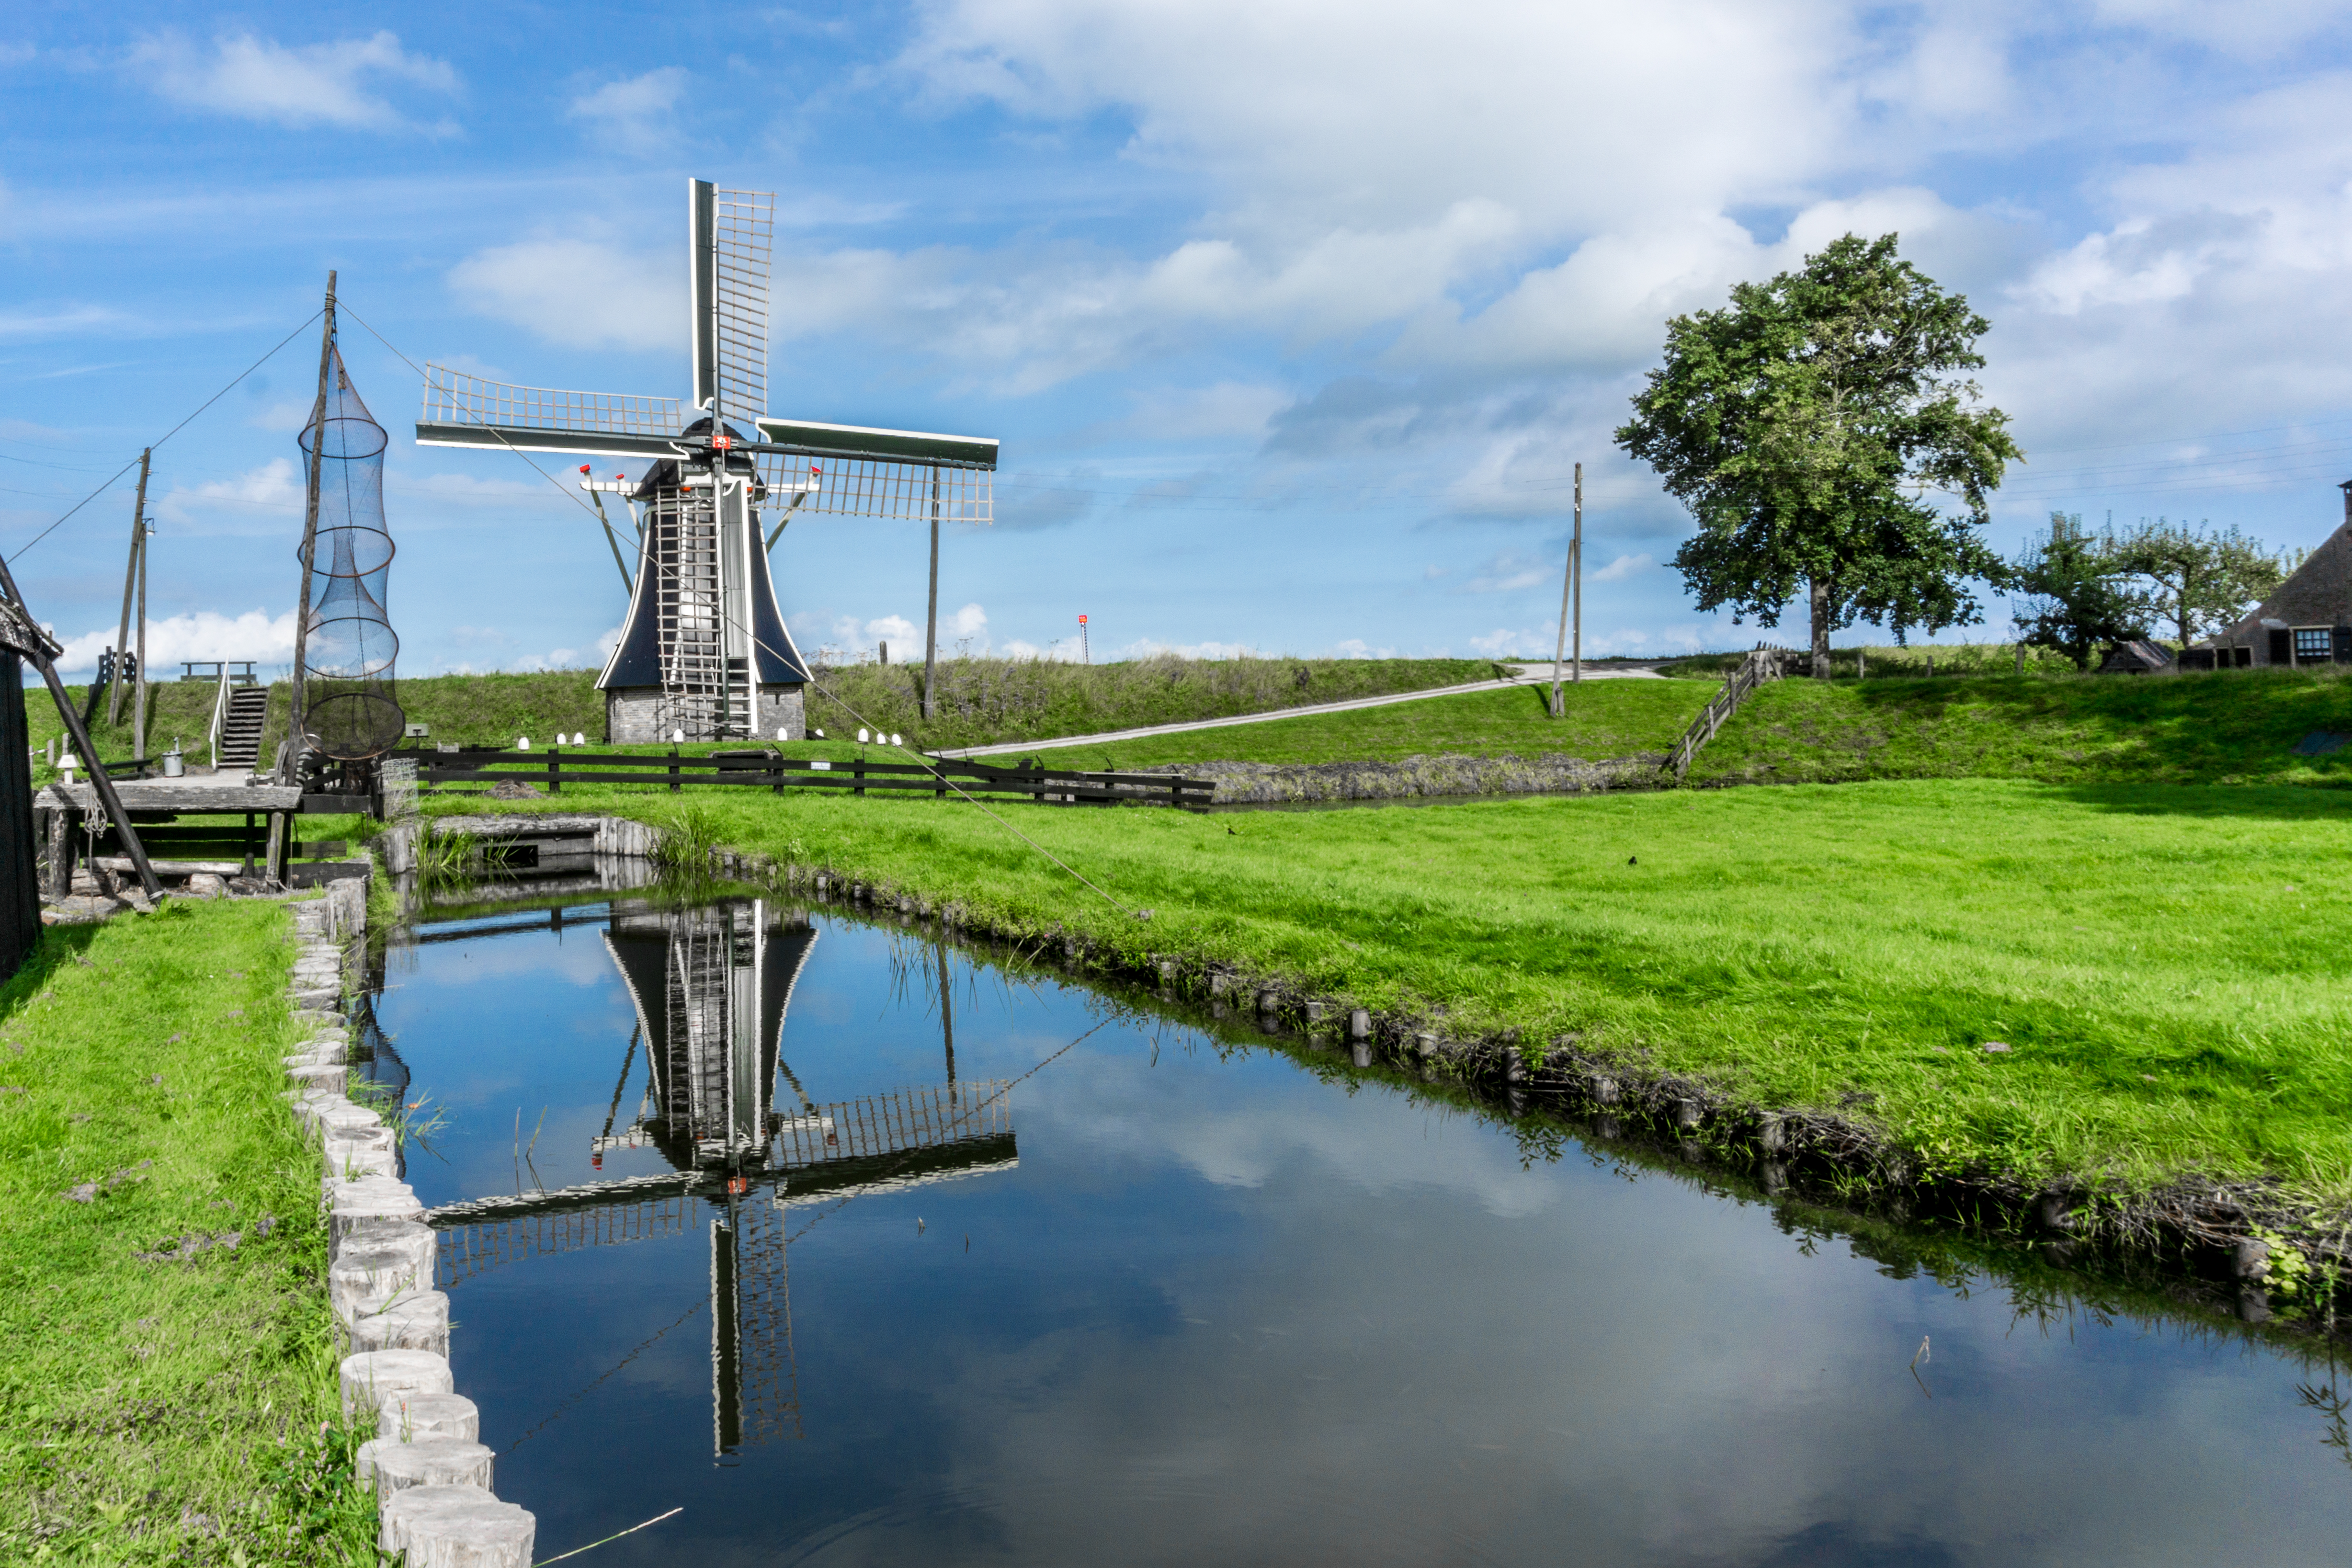 niederländische tapete,windmühle,natürliche landschaft,wasserweg,kanal,wasservorräte